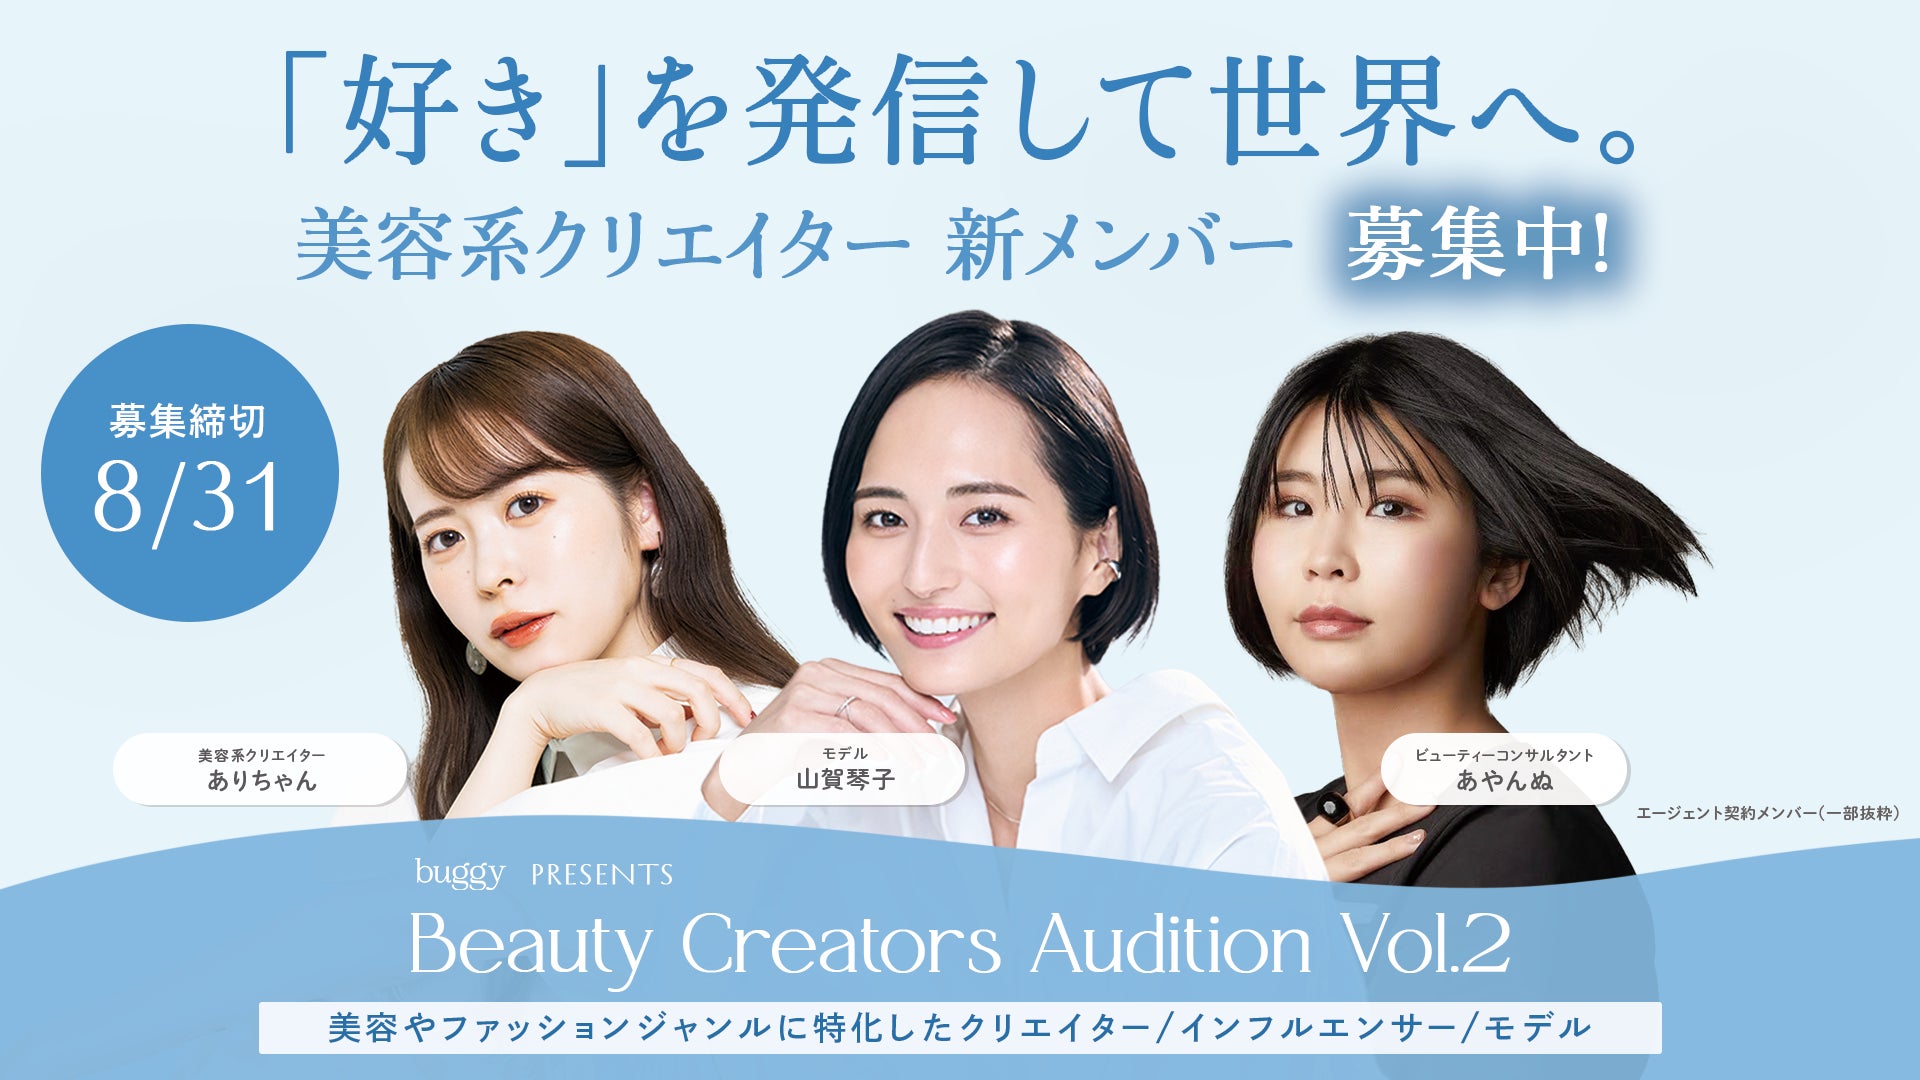 『「好き」を発信して世界へ。』美容系クリエイター新メンバー募集開始！buggy（バギー）、Beauty Creators Audition Vol.2 を開催